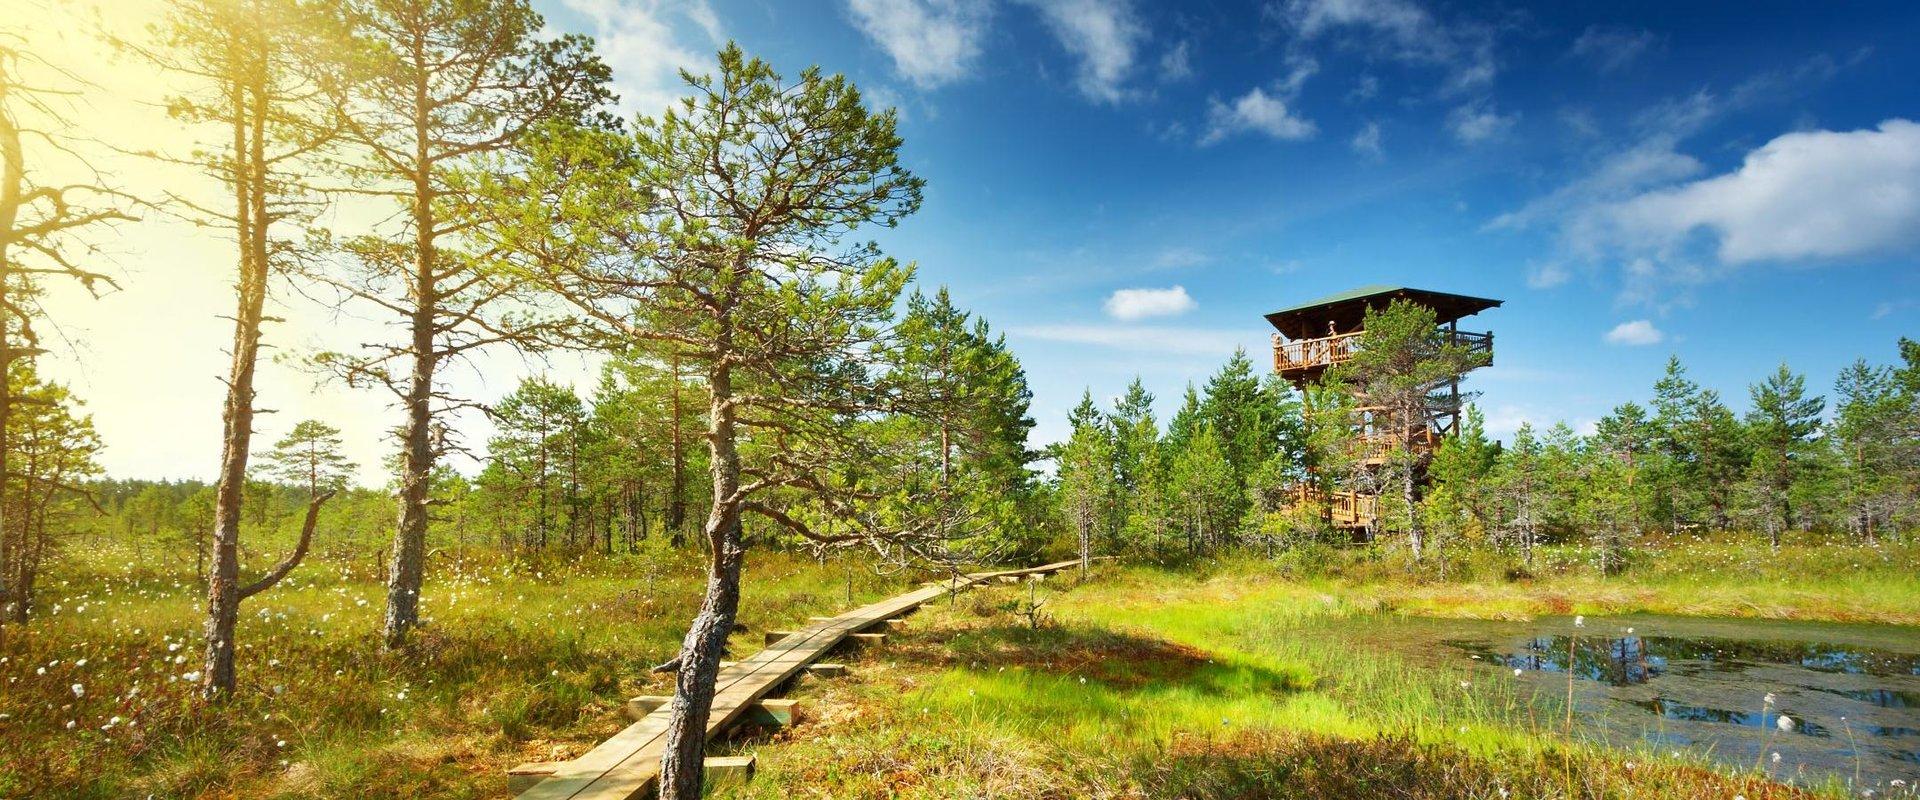 Lahemaan kansallispuisto on perustettu vuonna 1971 ja sen tehtävänä on säilyttää, tutkia ja esitellä Pohjois-Viron luontoa ja kulttuuriperintöä, biolo